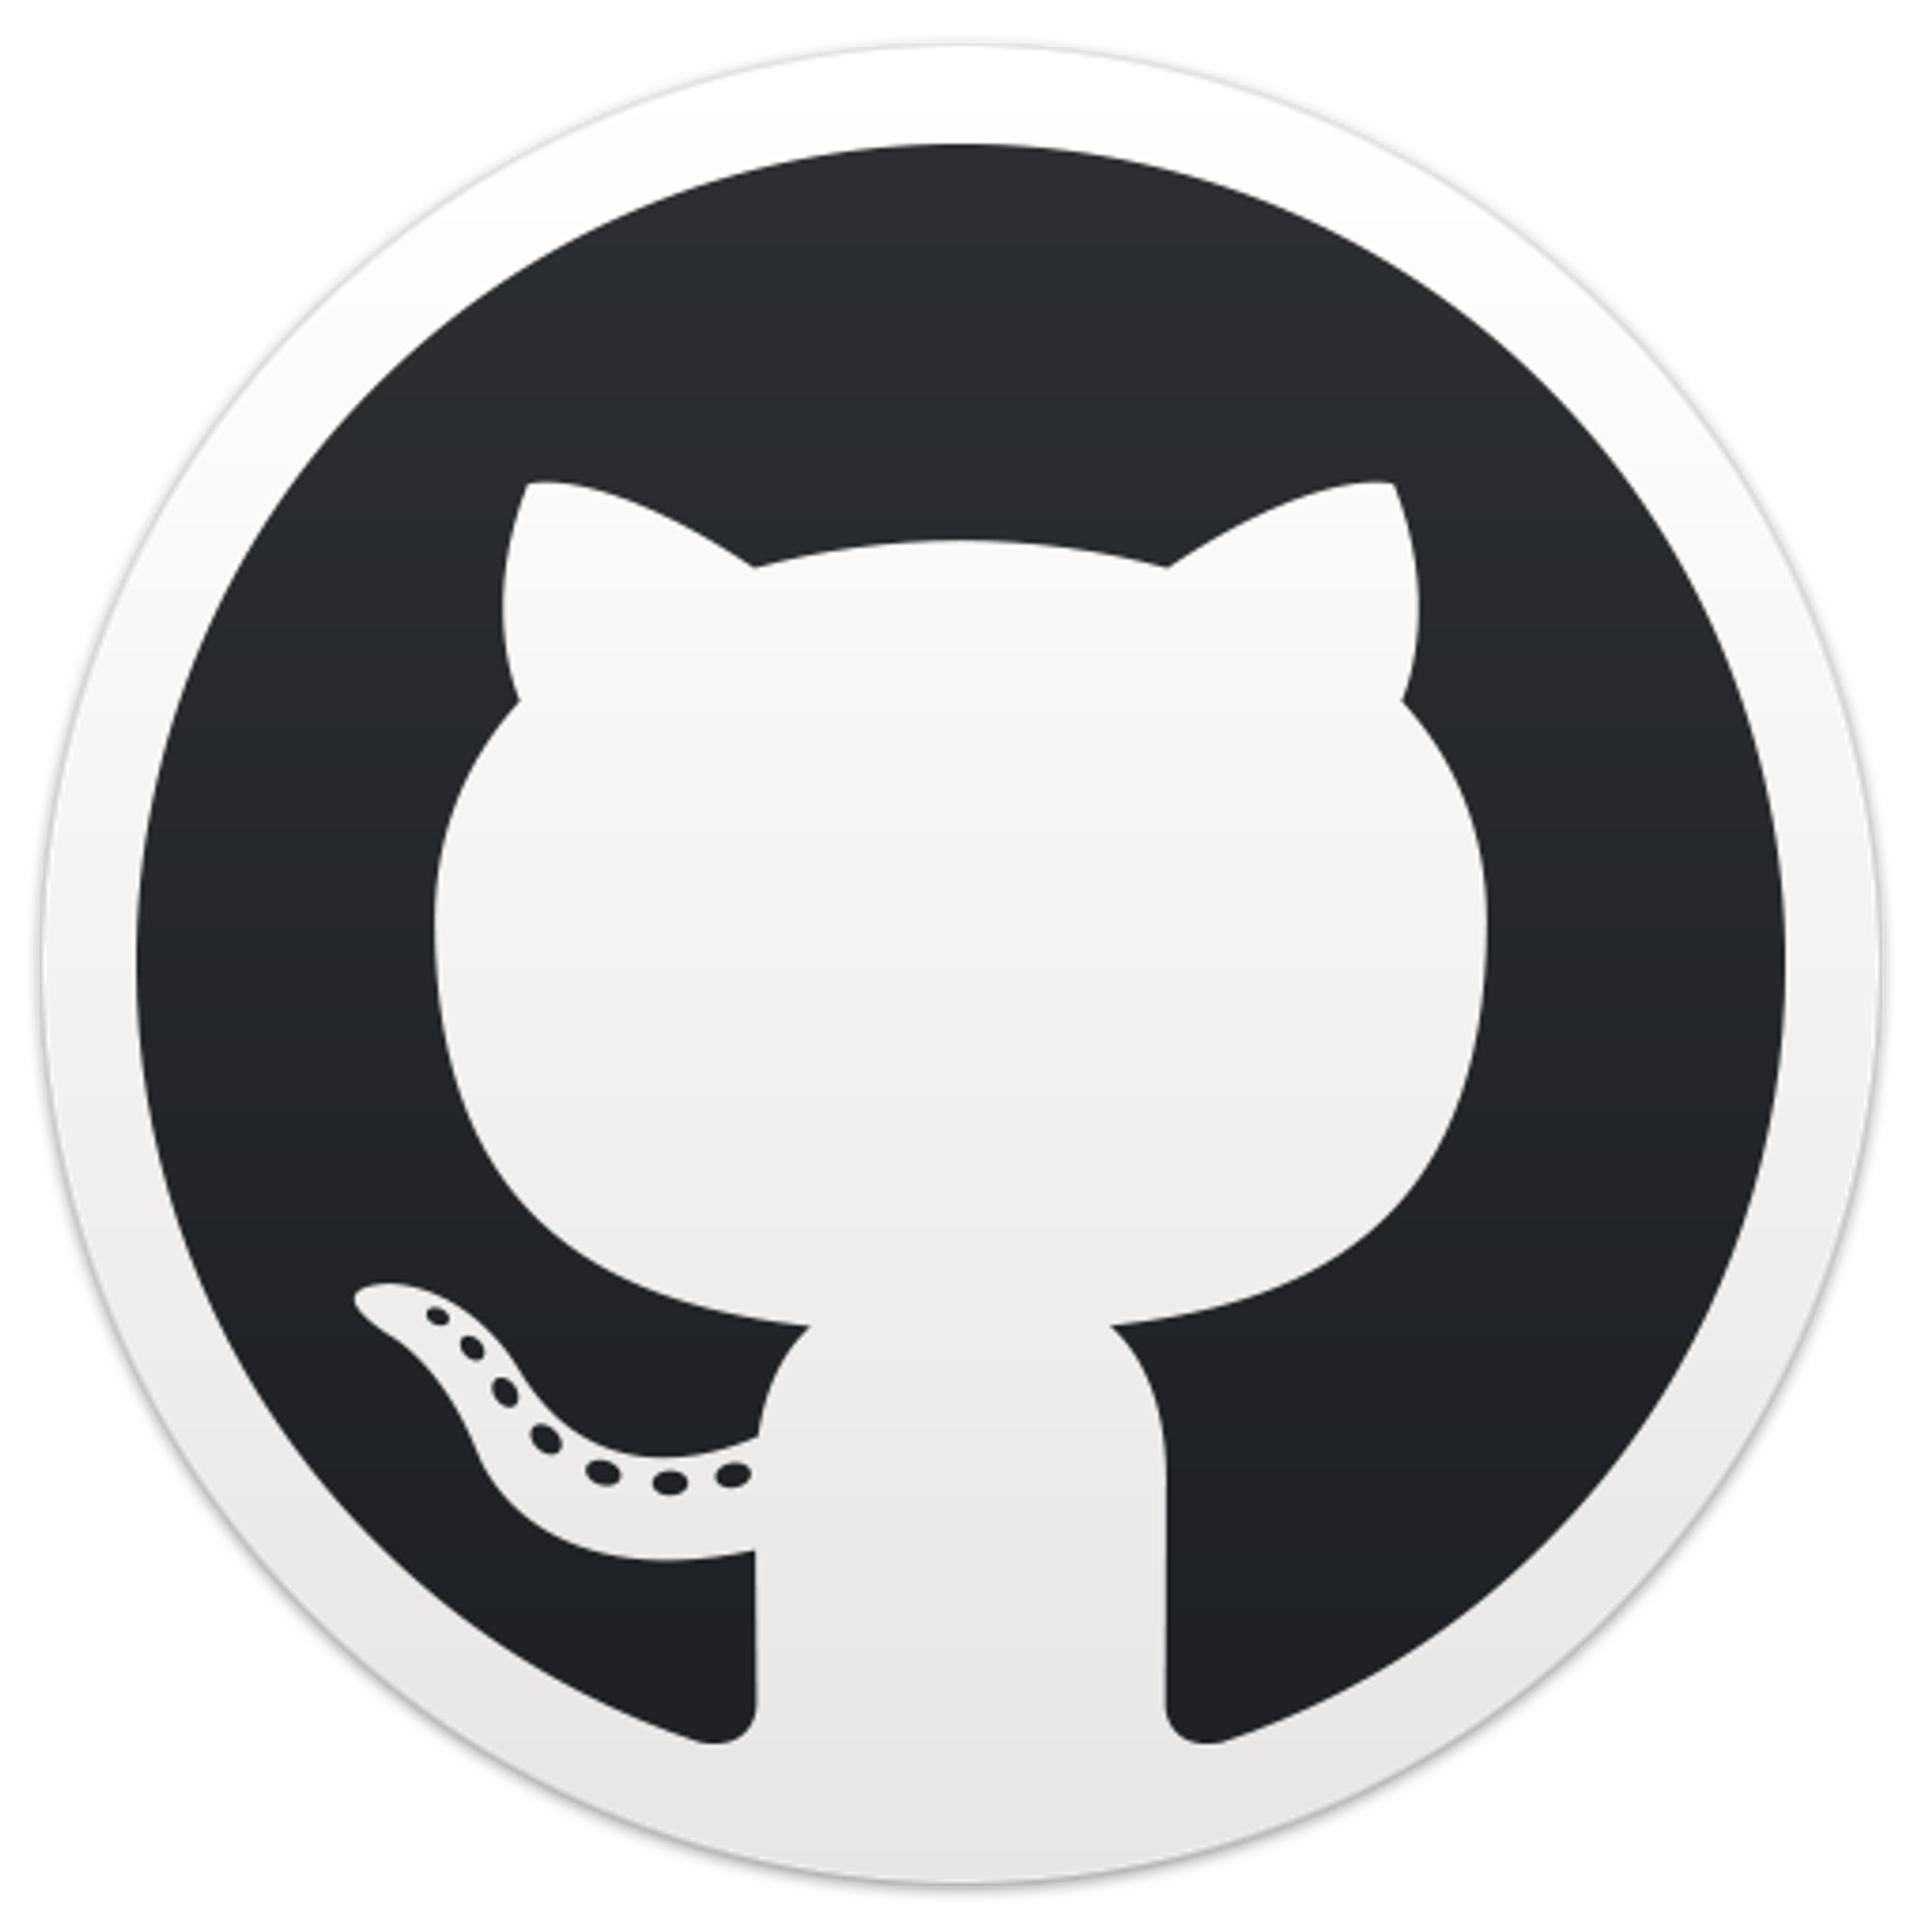 GitHub - janzheng/uploader: CLI-based Upload-helper for Cloudflare R2